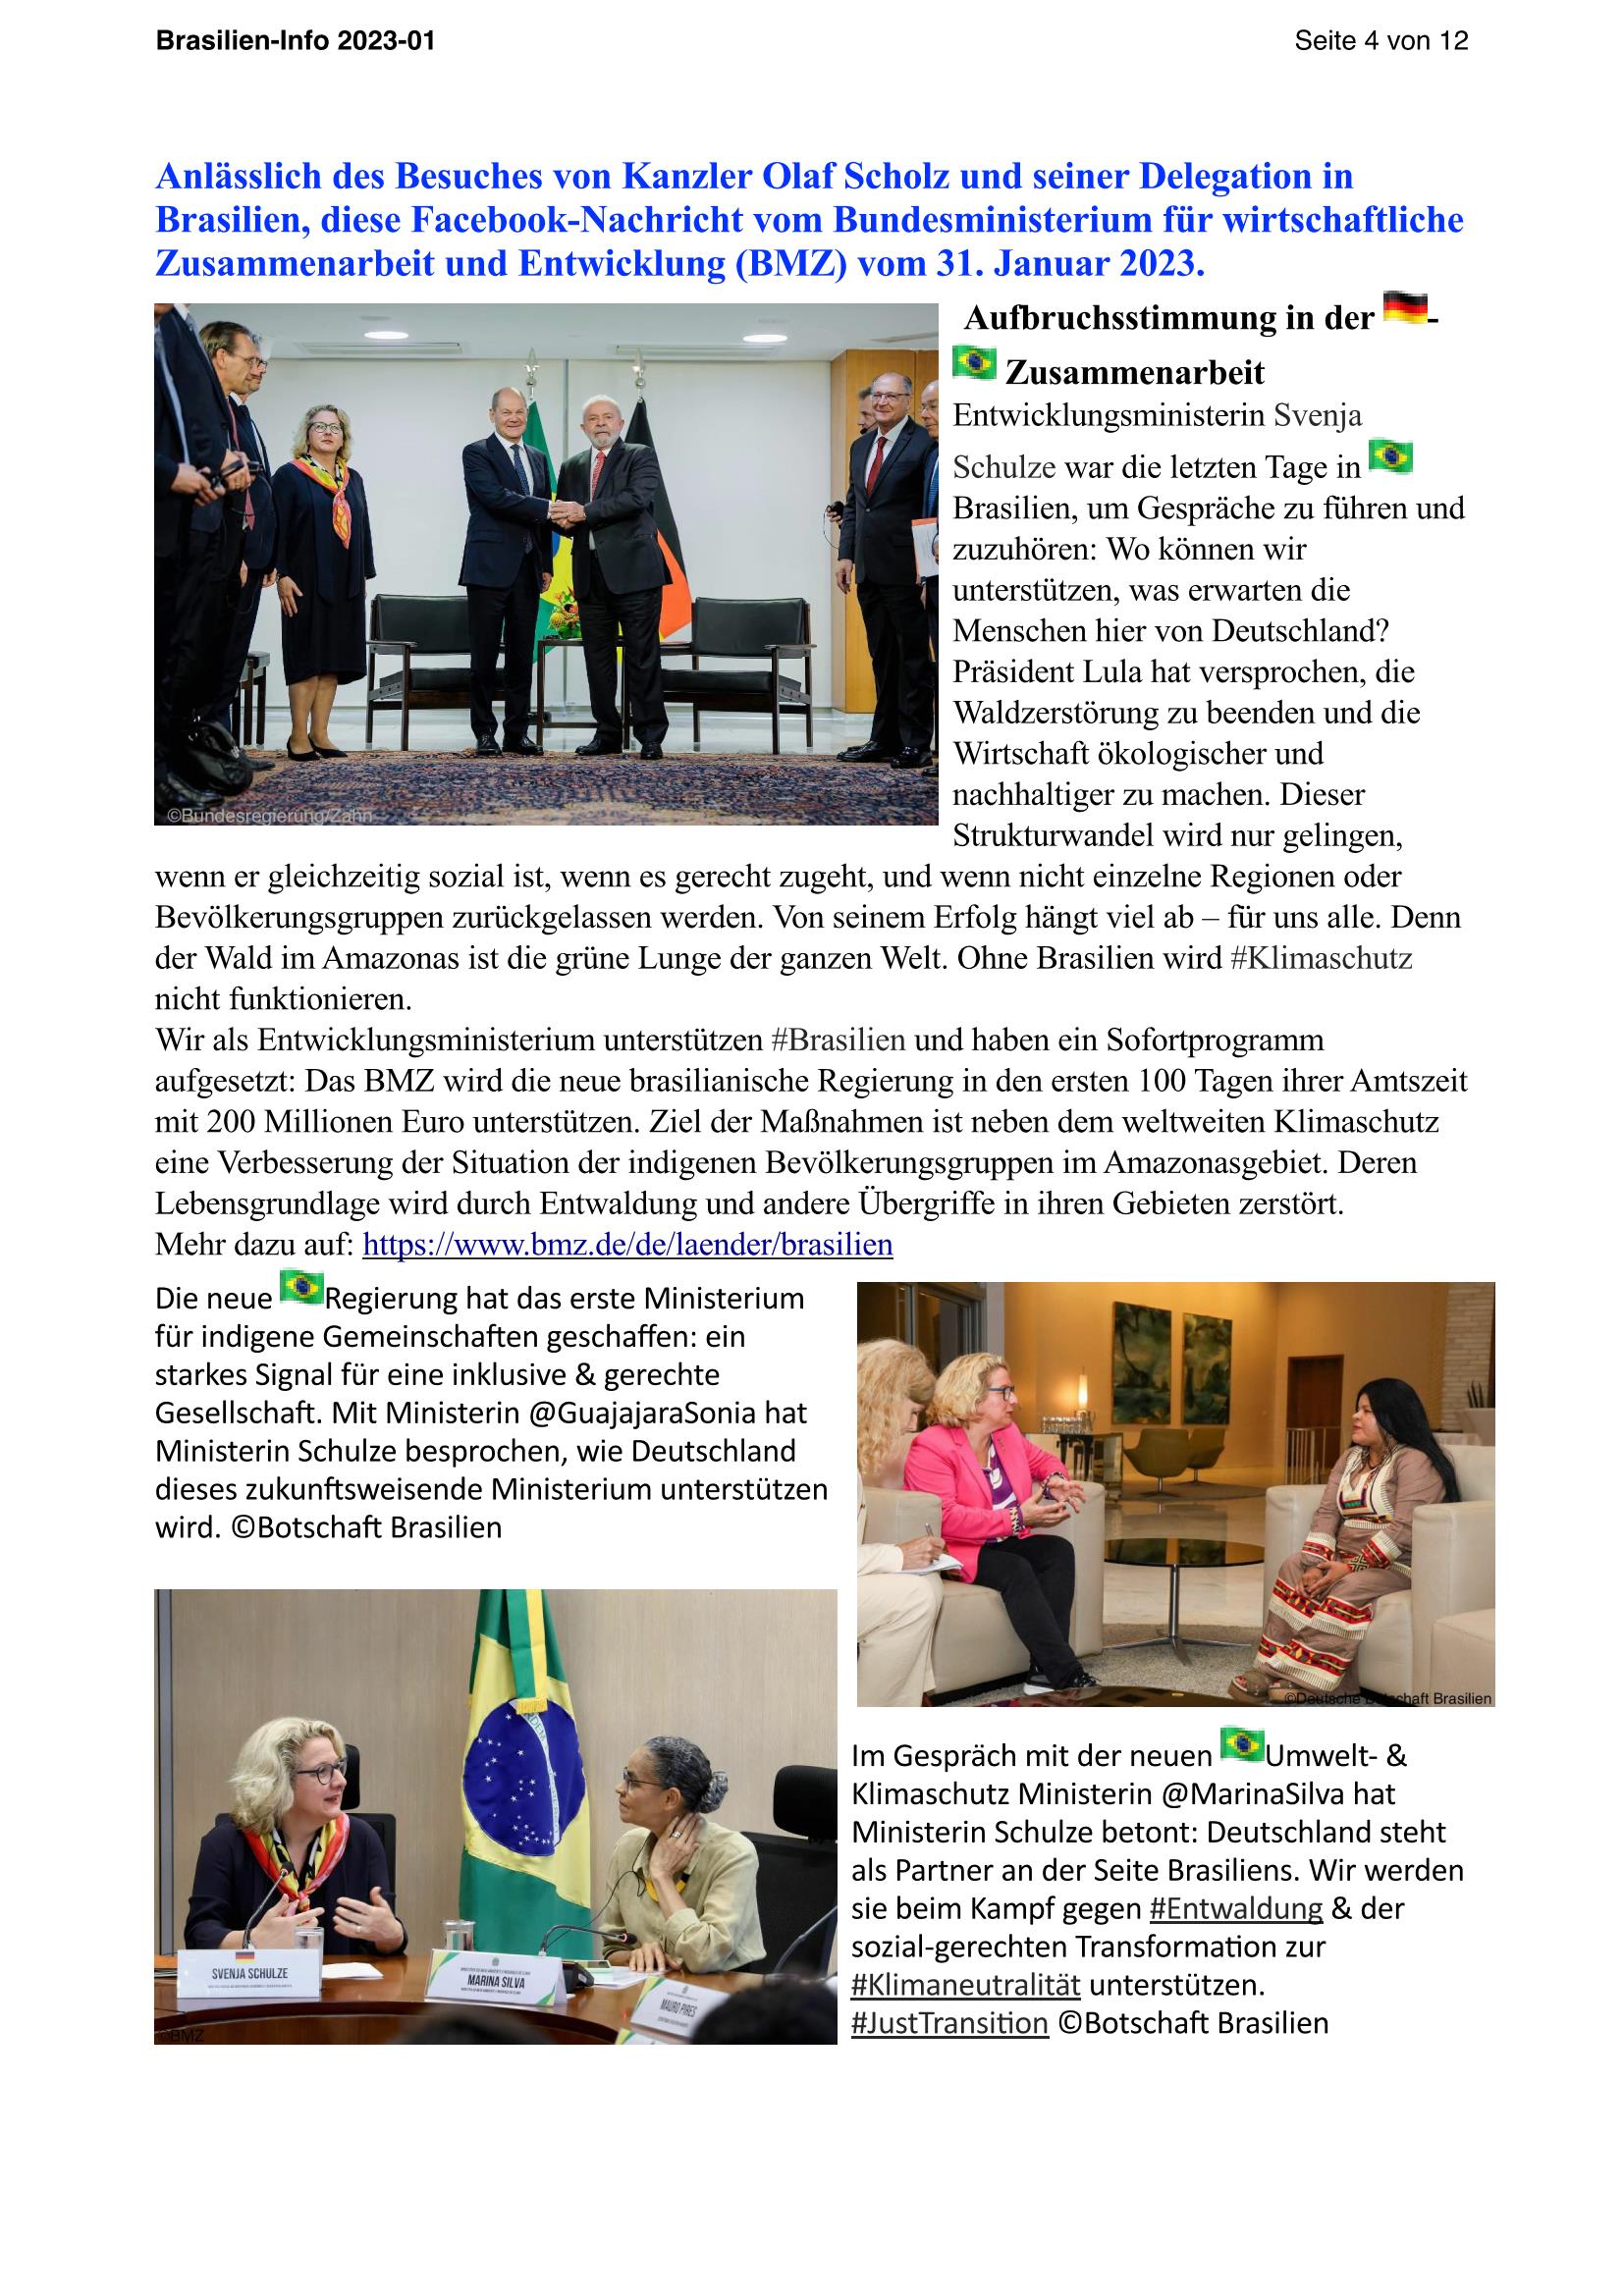 Brasilien Info 01 2023 Page 4